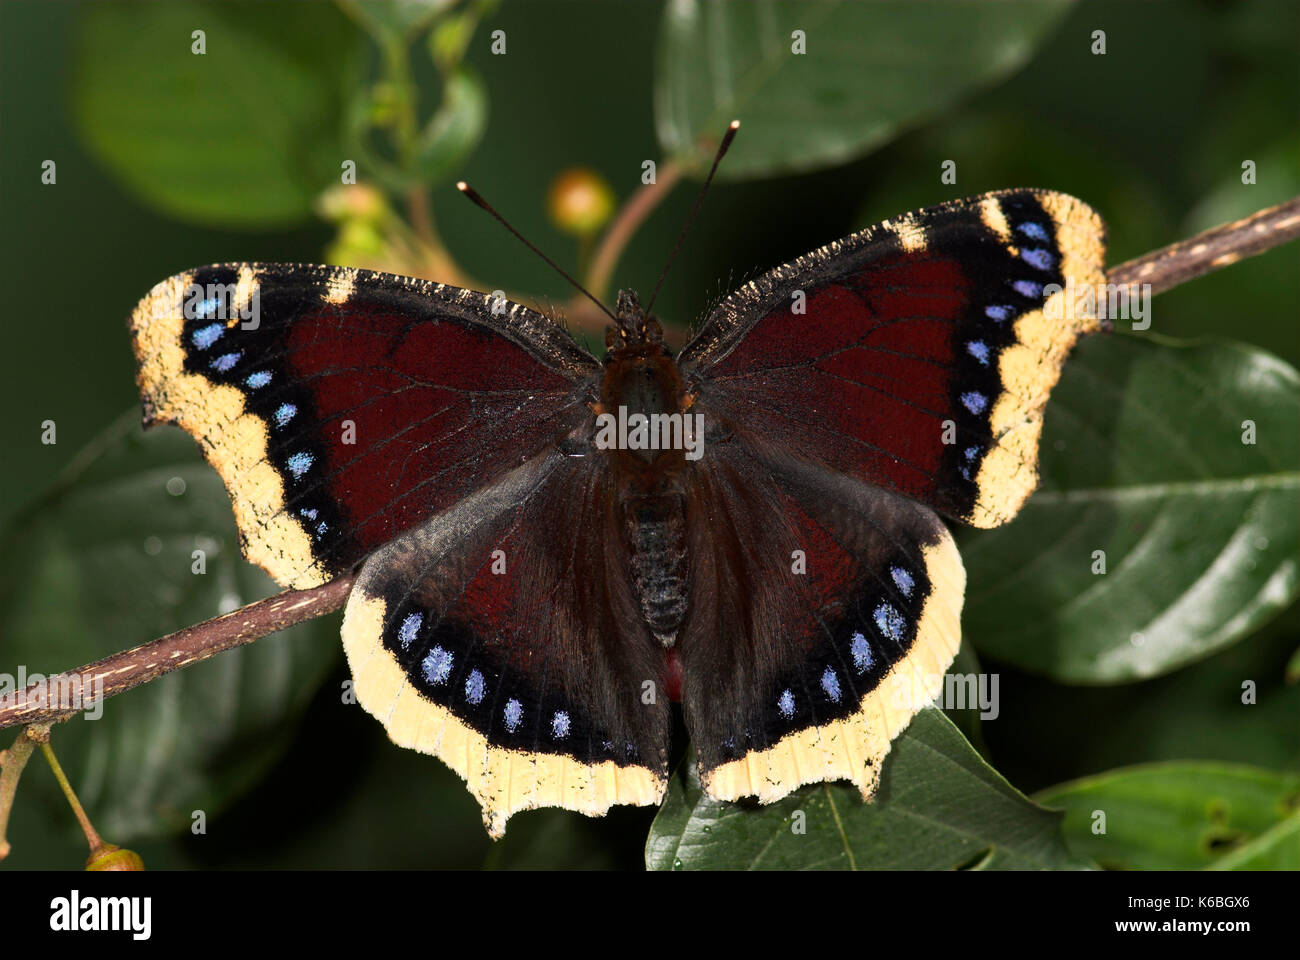 Camberwell Beauty Schmetterling, Nymphalis antiopa, Flügel ausgestreckt, offenen, dunklen Farben mit blauen Flecken und Cremefarbenen Rand, wandert in Großbritannien aus Europa, p Stockfoto